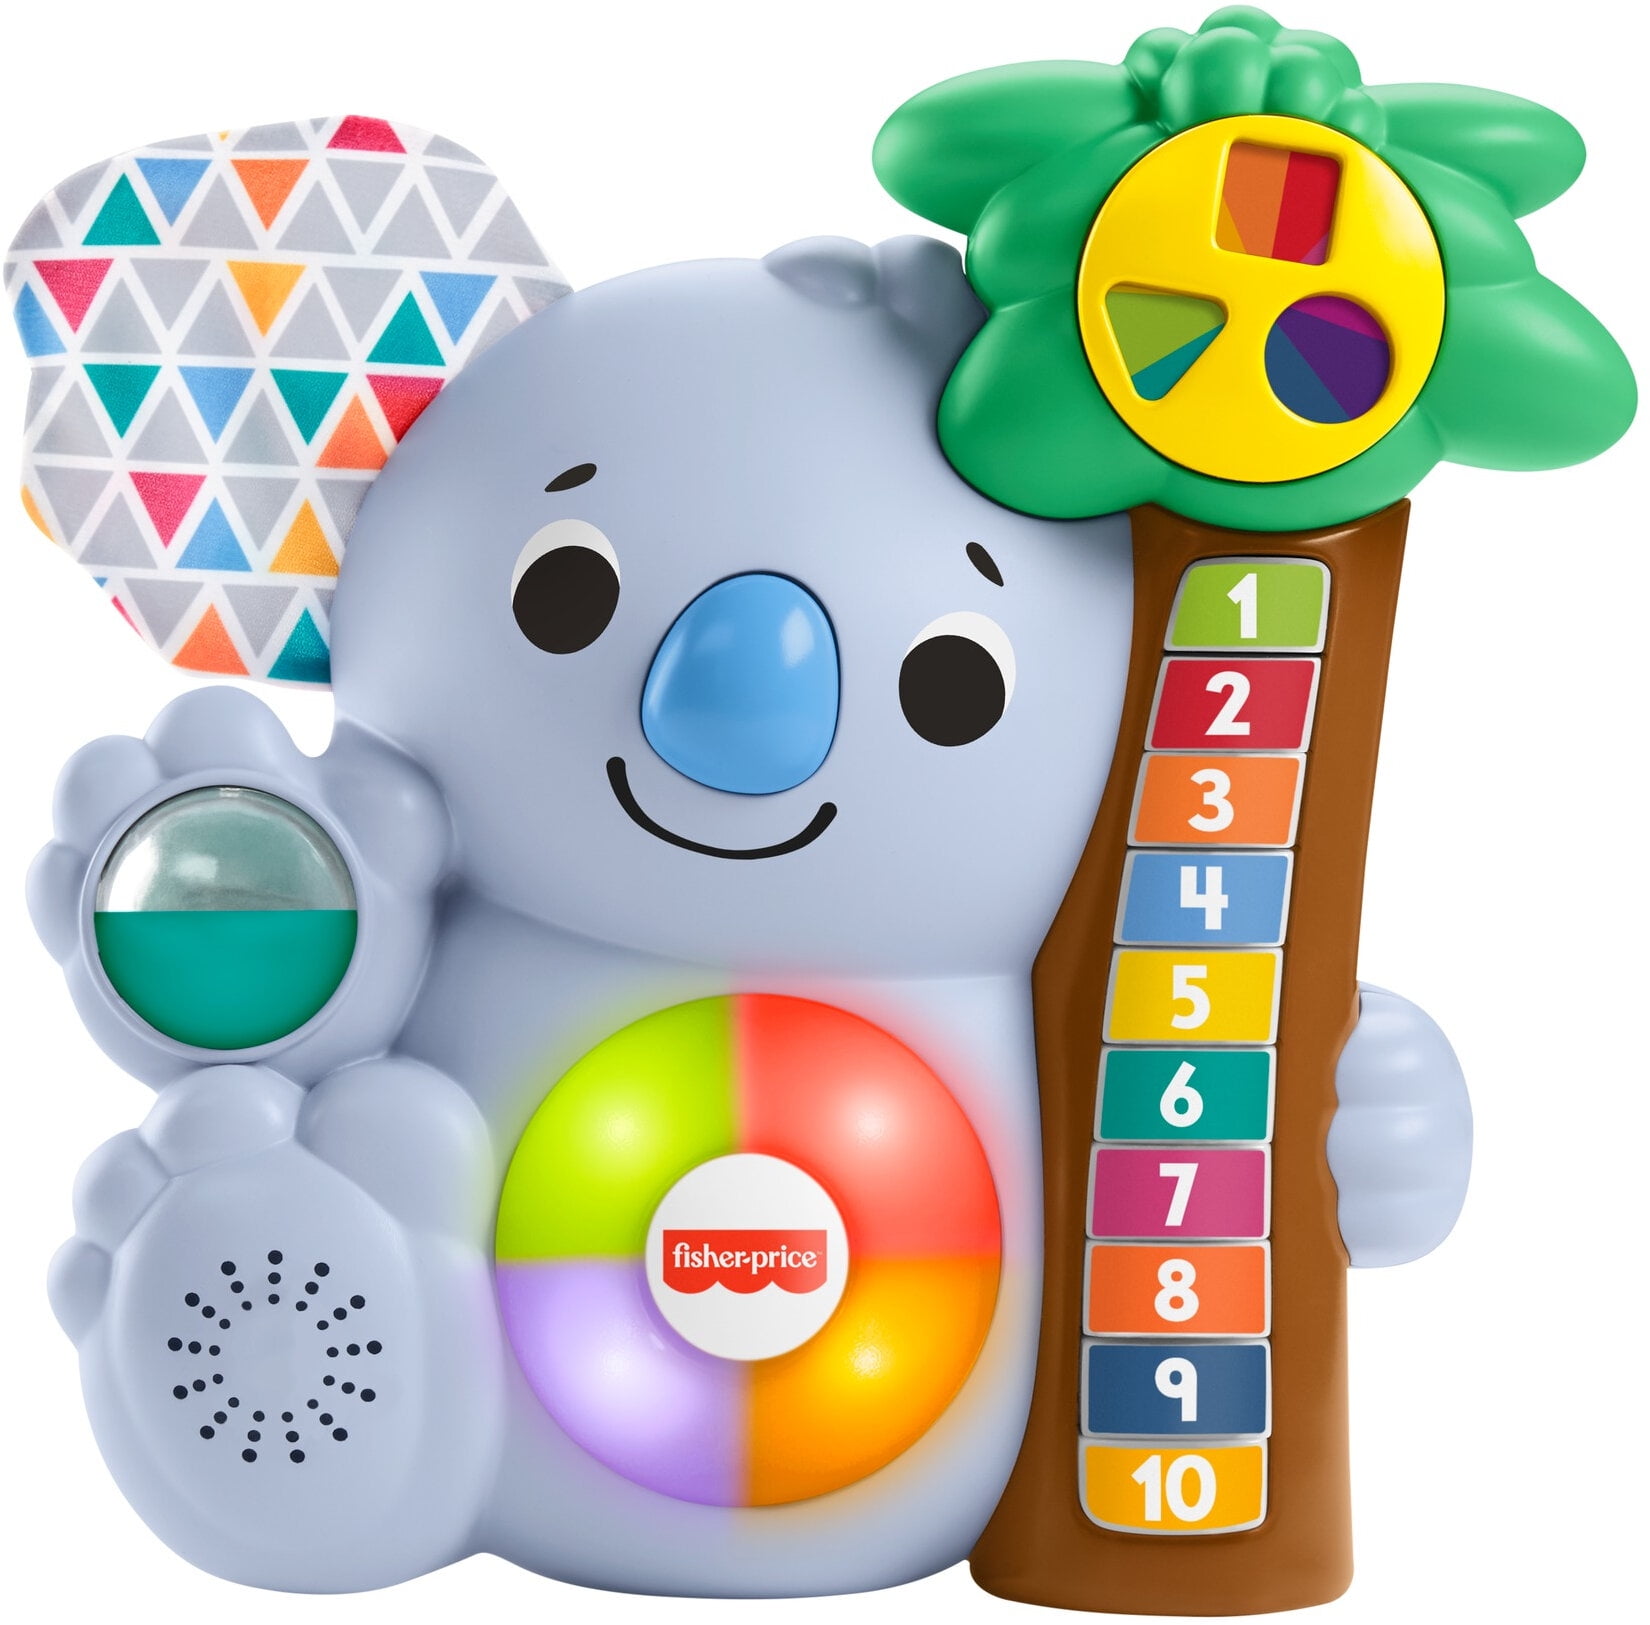 Fisher-Price linkimals Counting Koala interaktives Spielzeug für Kinder 